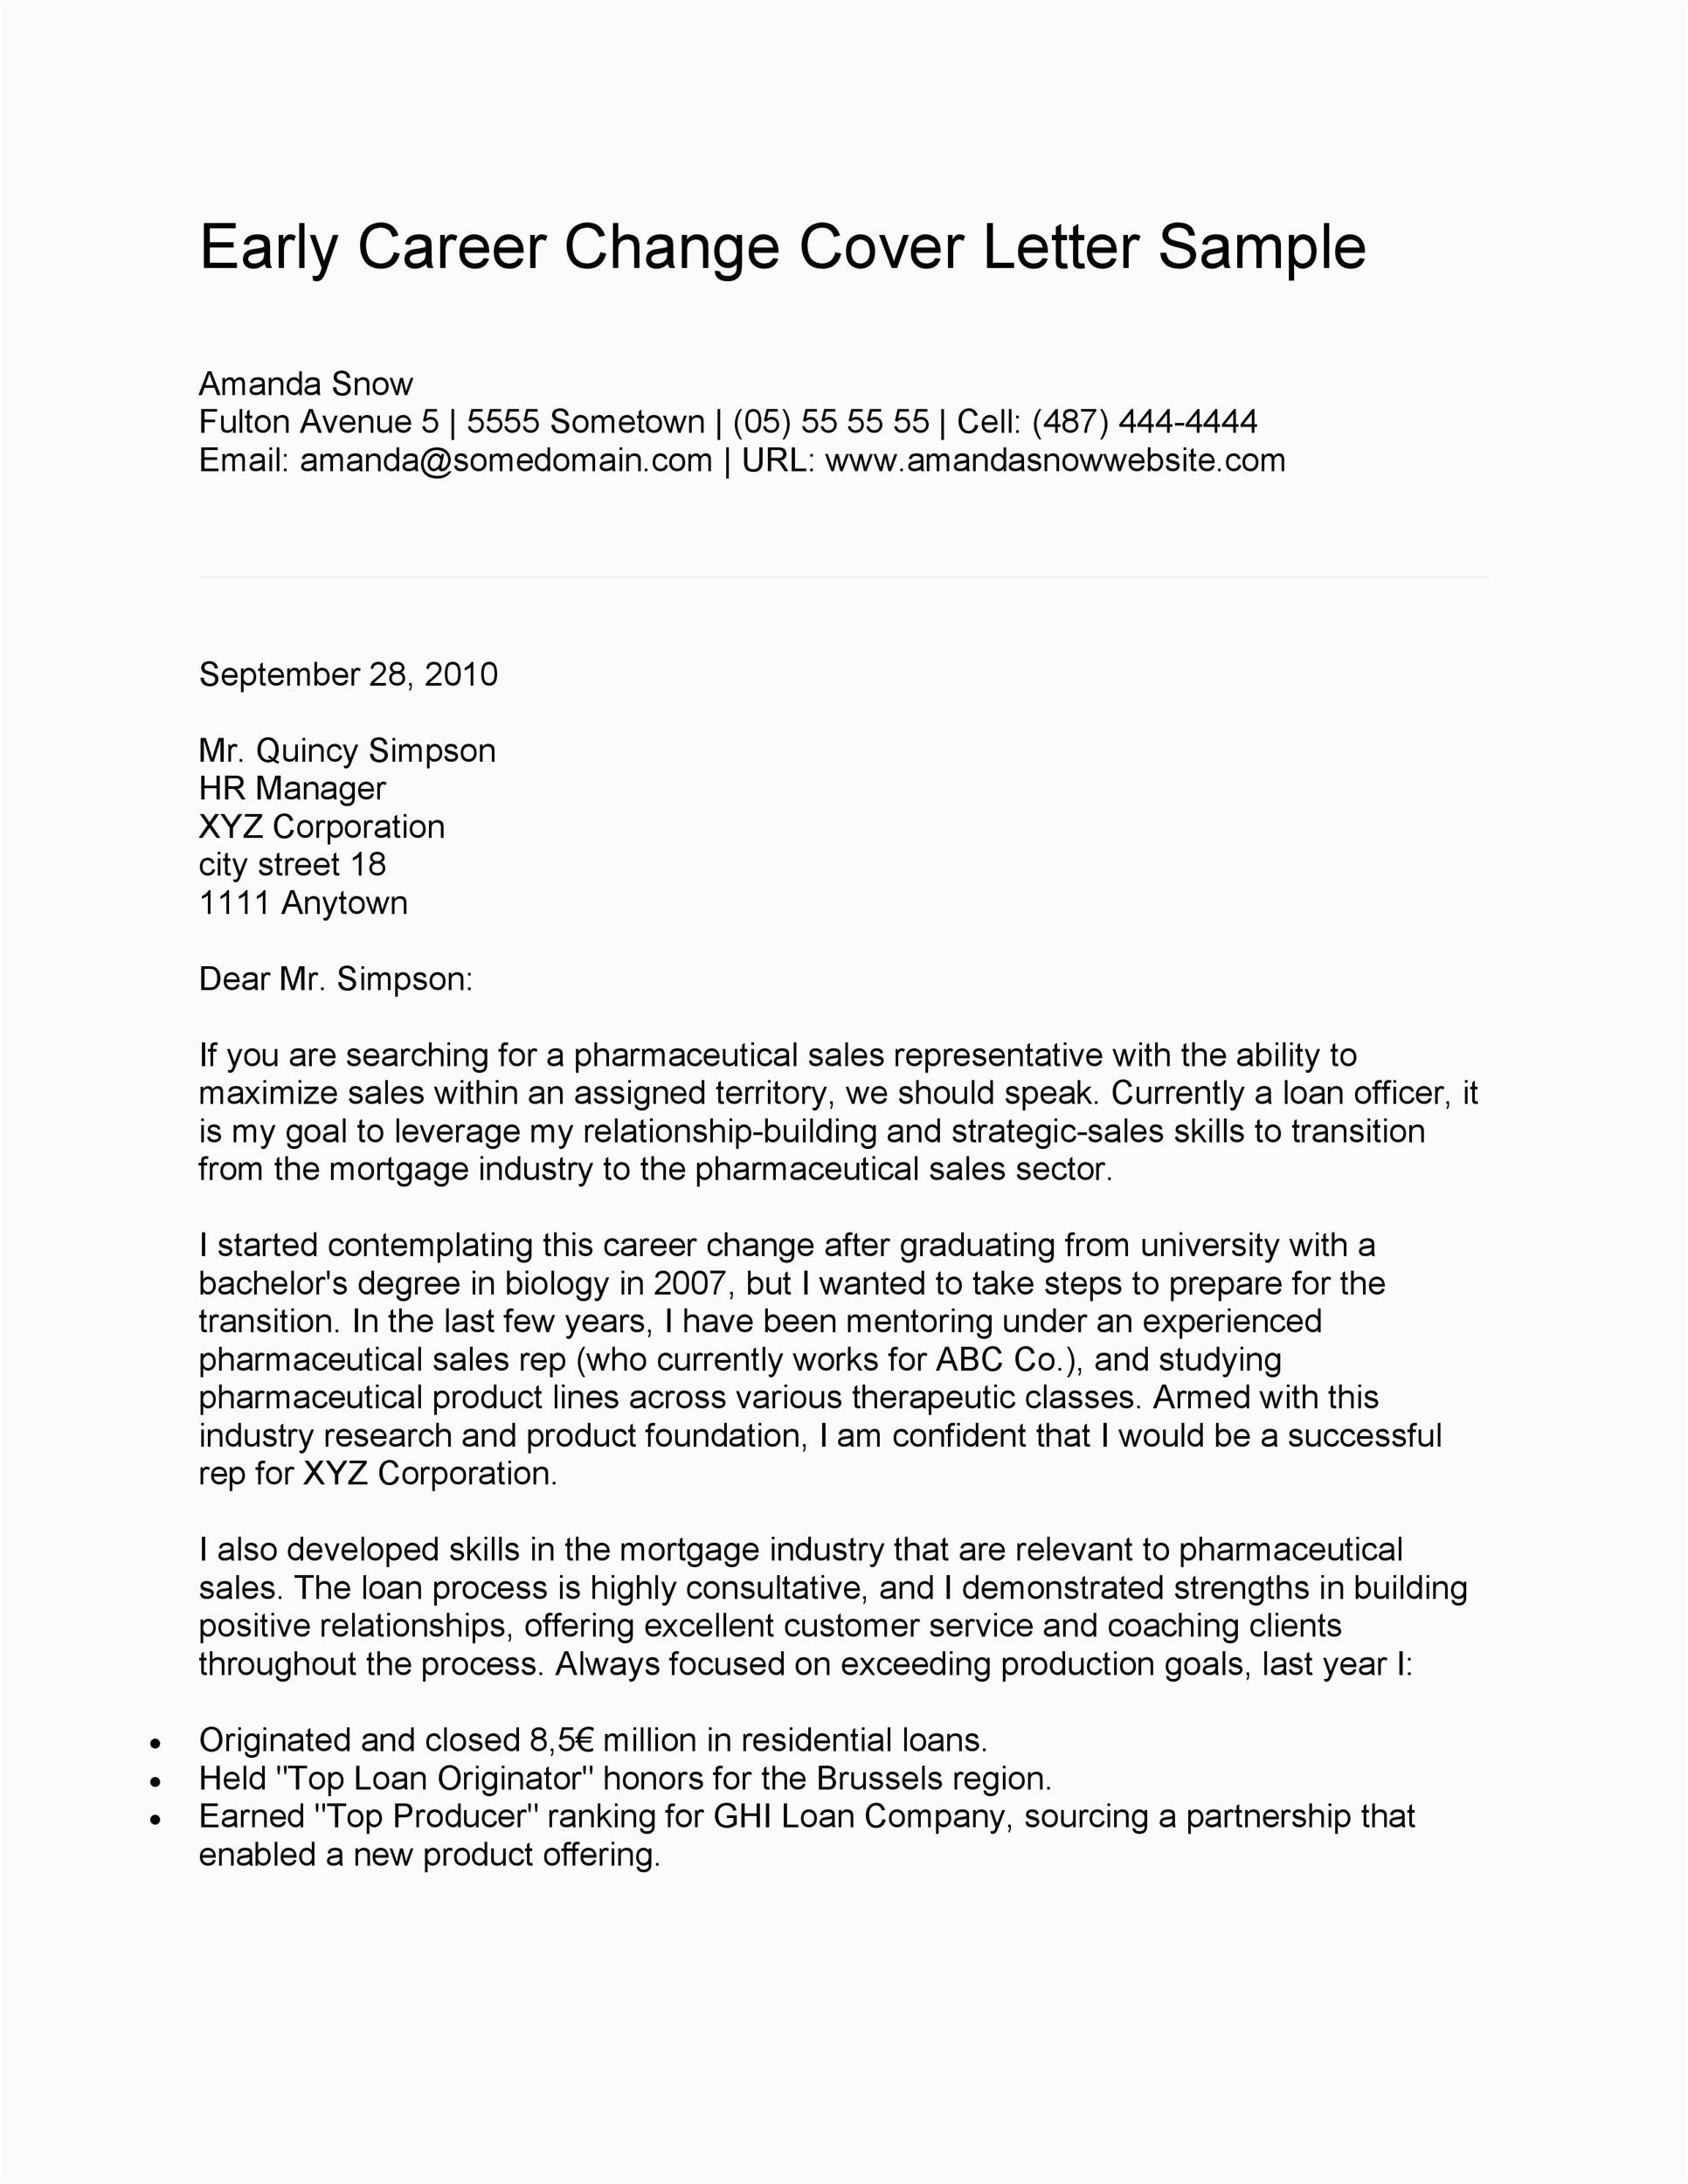 Sample Career Change Resume Cover Letter 39 Professional Career Change Cover Letters Templatelab